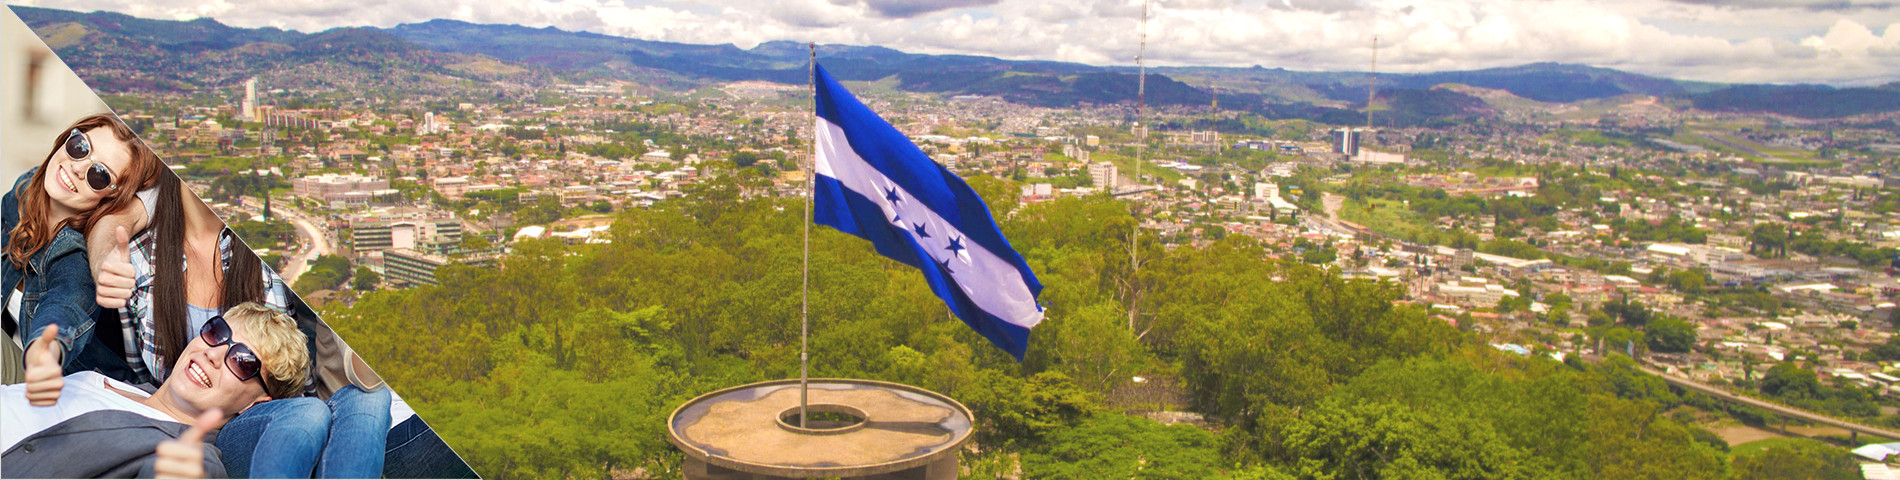 Honduras - Klassenfahrten / Gruppen